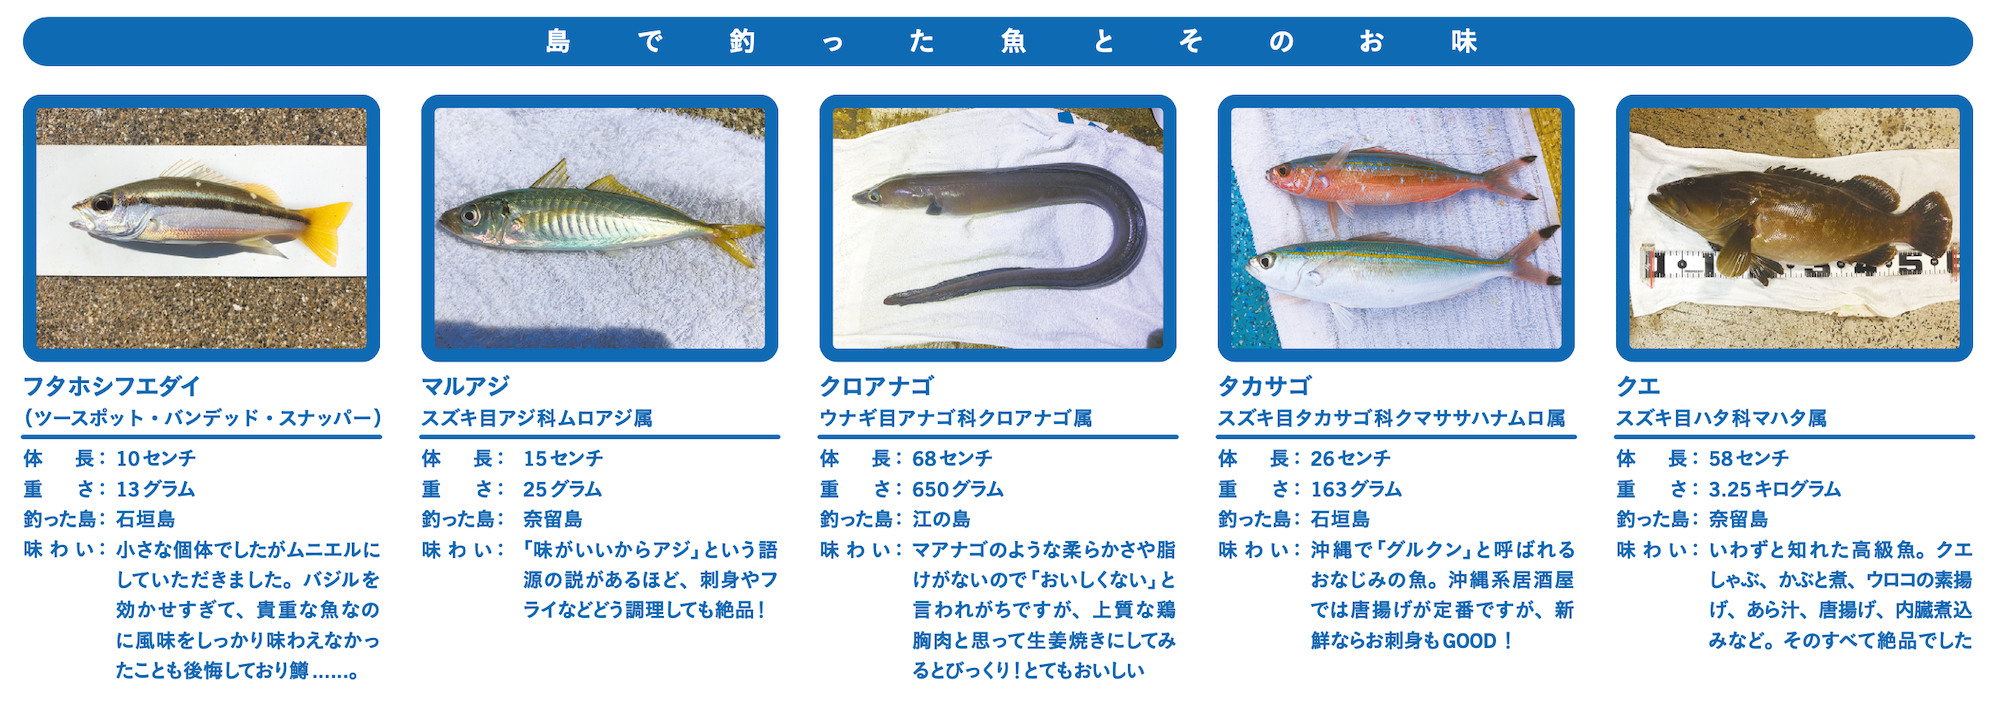 島で釣った魚とそのお味 Ritokei 離島経済新聞